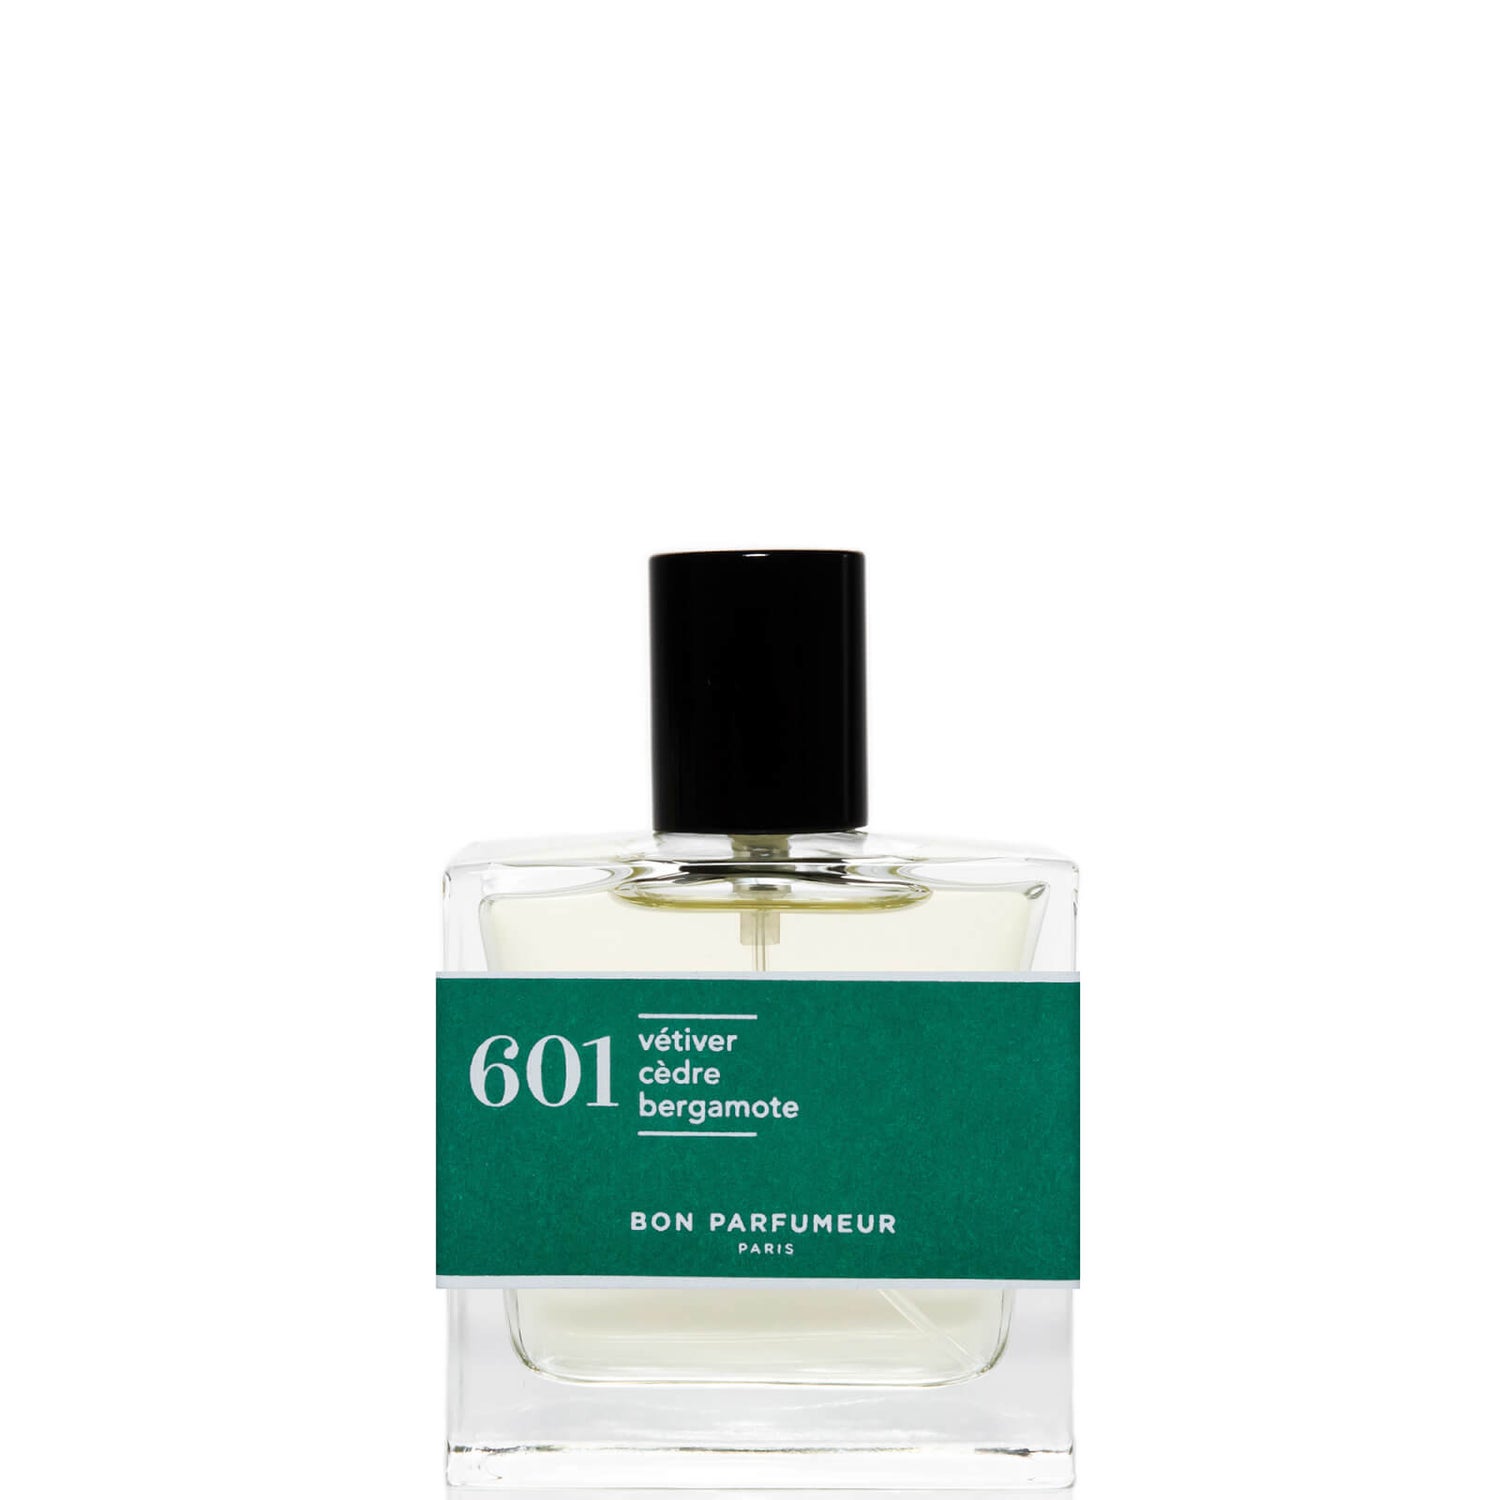 Bon Parfumeur 601 Vetiver Ceder Bergamot Eau de Parfum - 30ml